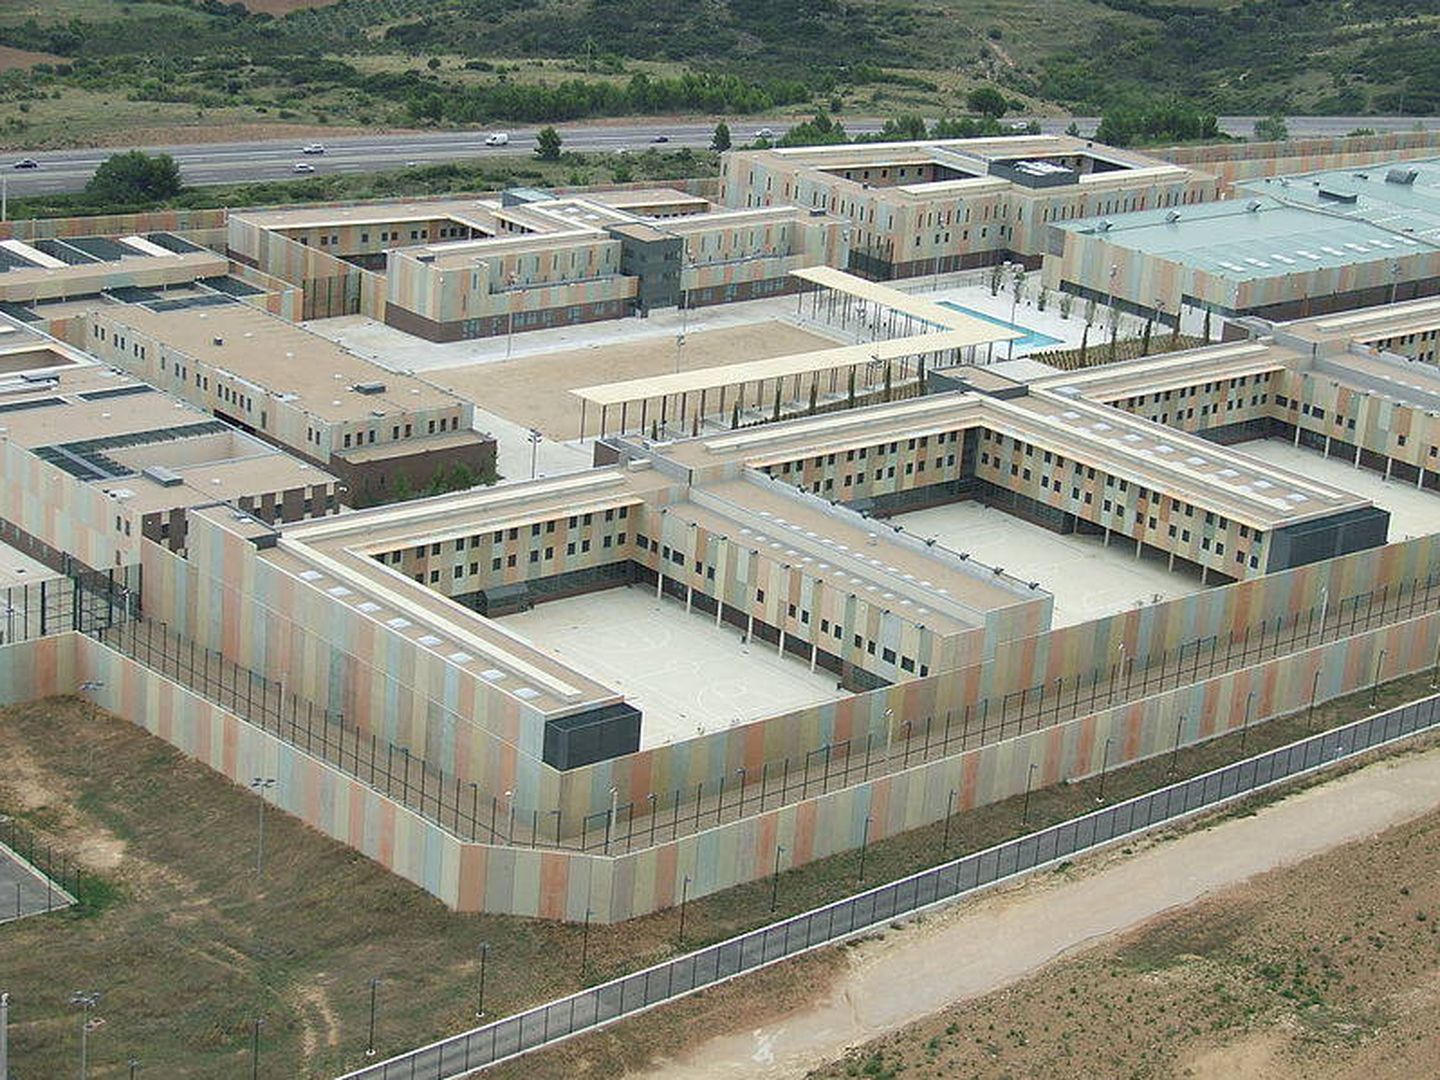 Vista aérea del Centro Penitenciario de Puig de les Basses, uno de los centros donde se realizan estas actividades (Fuente: MolinencVolador/Wikimedia)